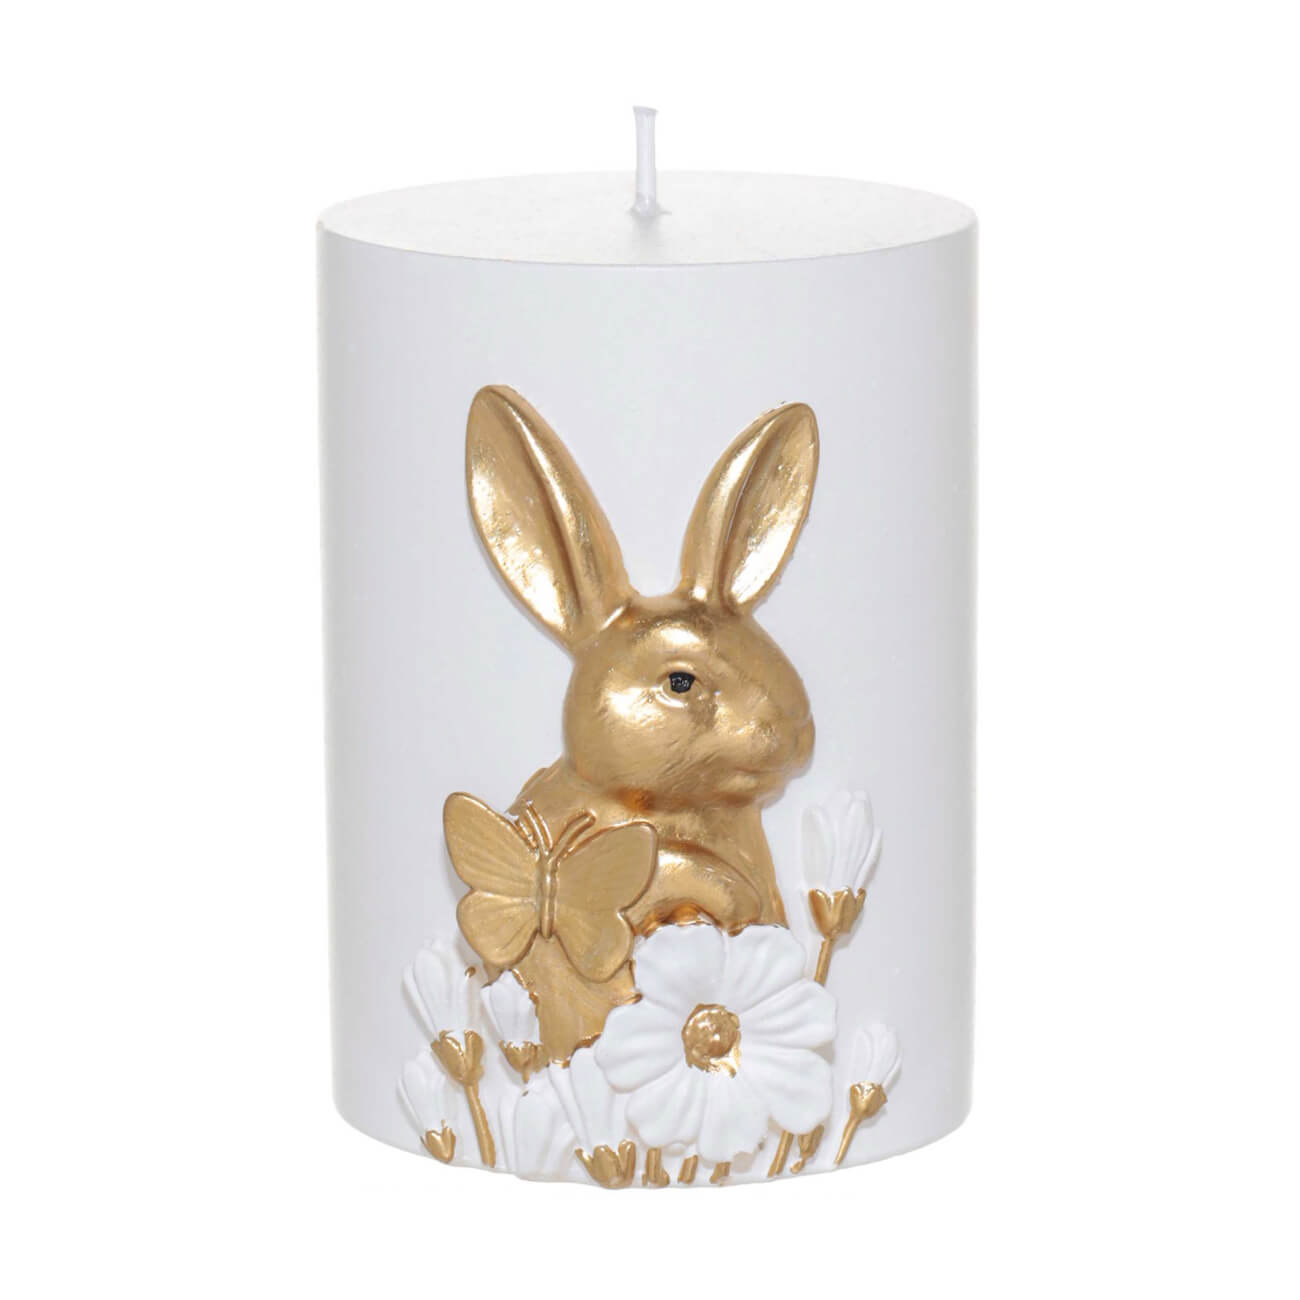 подставка для яйца 11 см керамика бело золотистая кролик со скорлупой easter gold Свеча, 9 см, цилиндрическая, бело-золотистая, Кролик с бабочкой, Easter gold